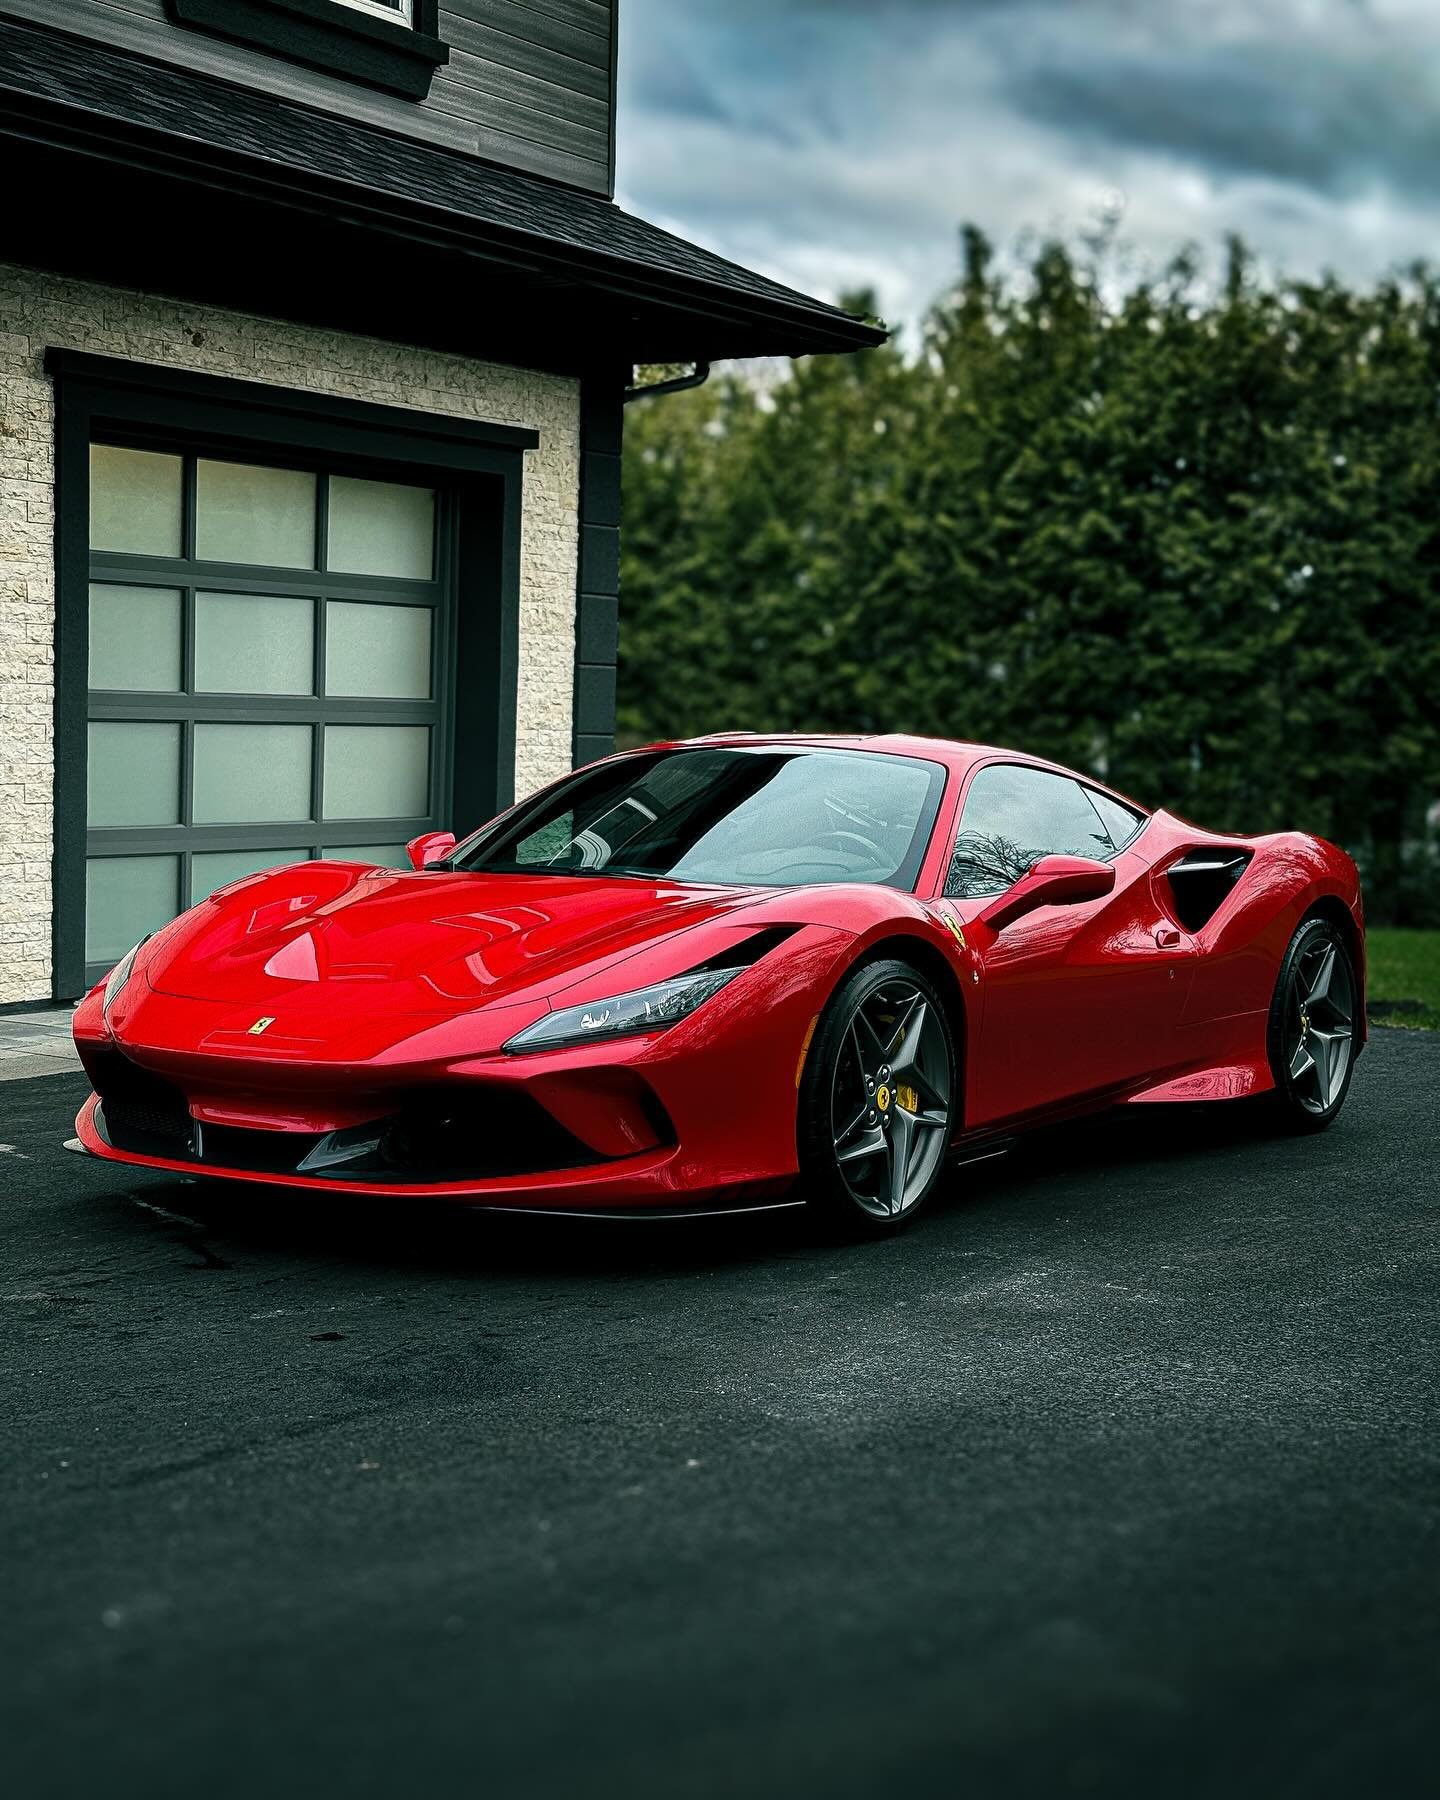 Detailing de cette Ferrari F8 Tributo
Cette derni&egrave;re poss&egrave;de une protection PPF + Nano c&eacute;ramique 🛡️
Vous voulez un gloss &eacute;pique et une facilit&eacute; d&rsquo;entretien? Vous savez qui appeler 

📍Sherbrooke | Magog

#f8t